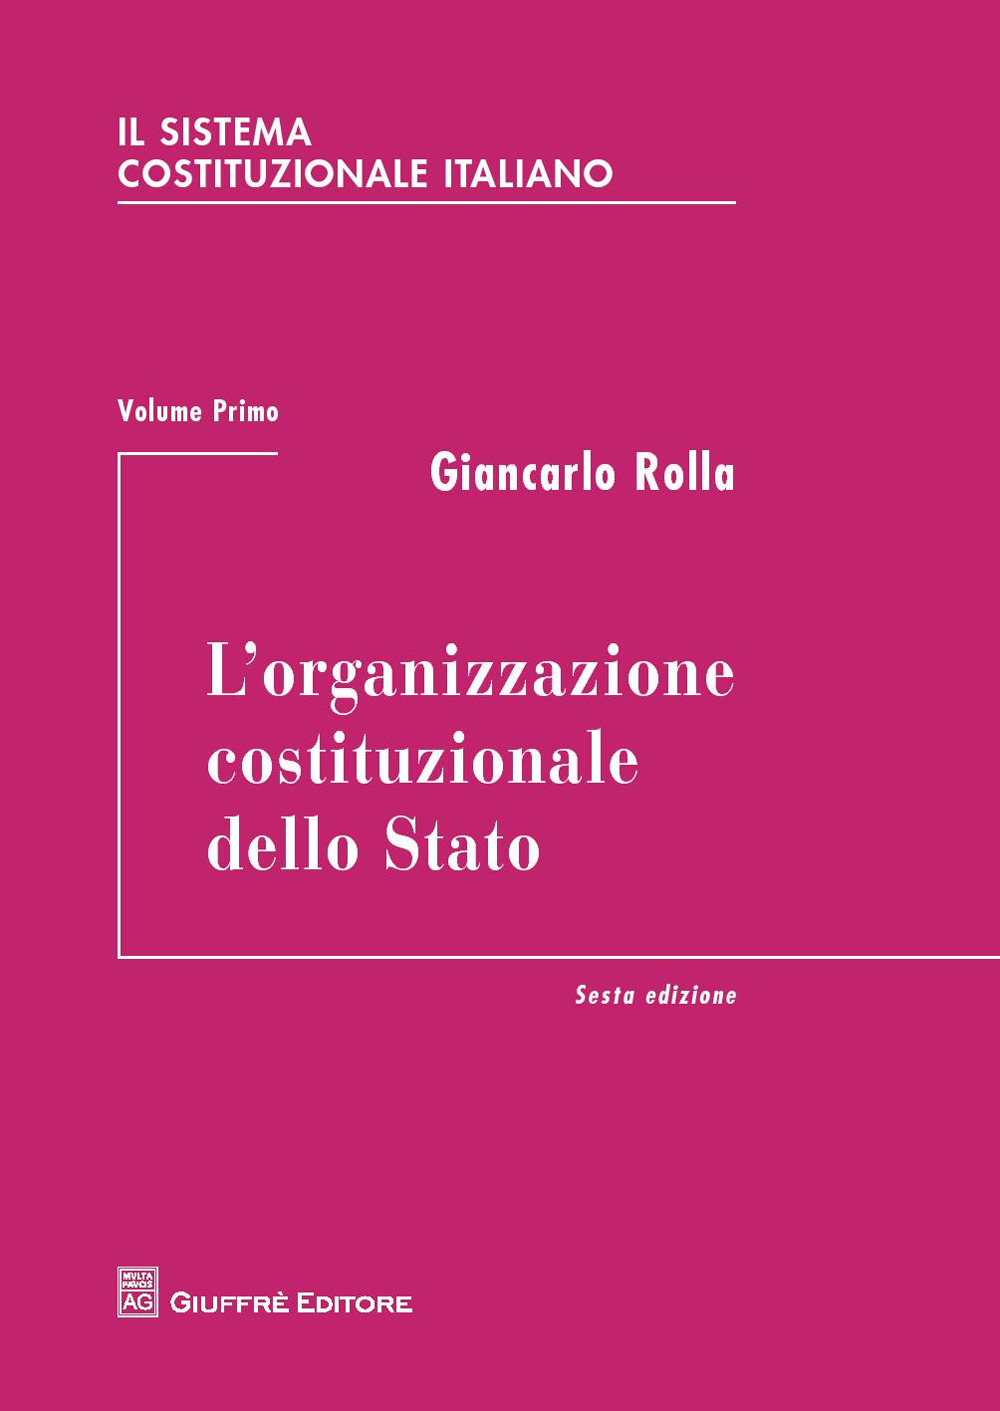 Image of Il sistema costituzionale italiano. Vol. 1: organizzazione costituzionale dello Stato, L'.